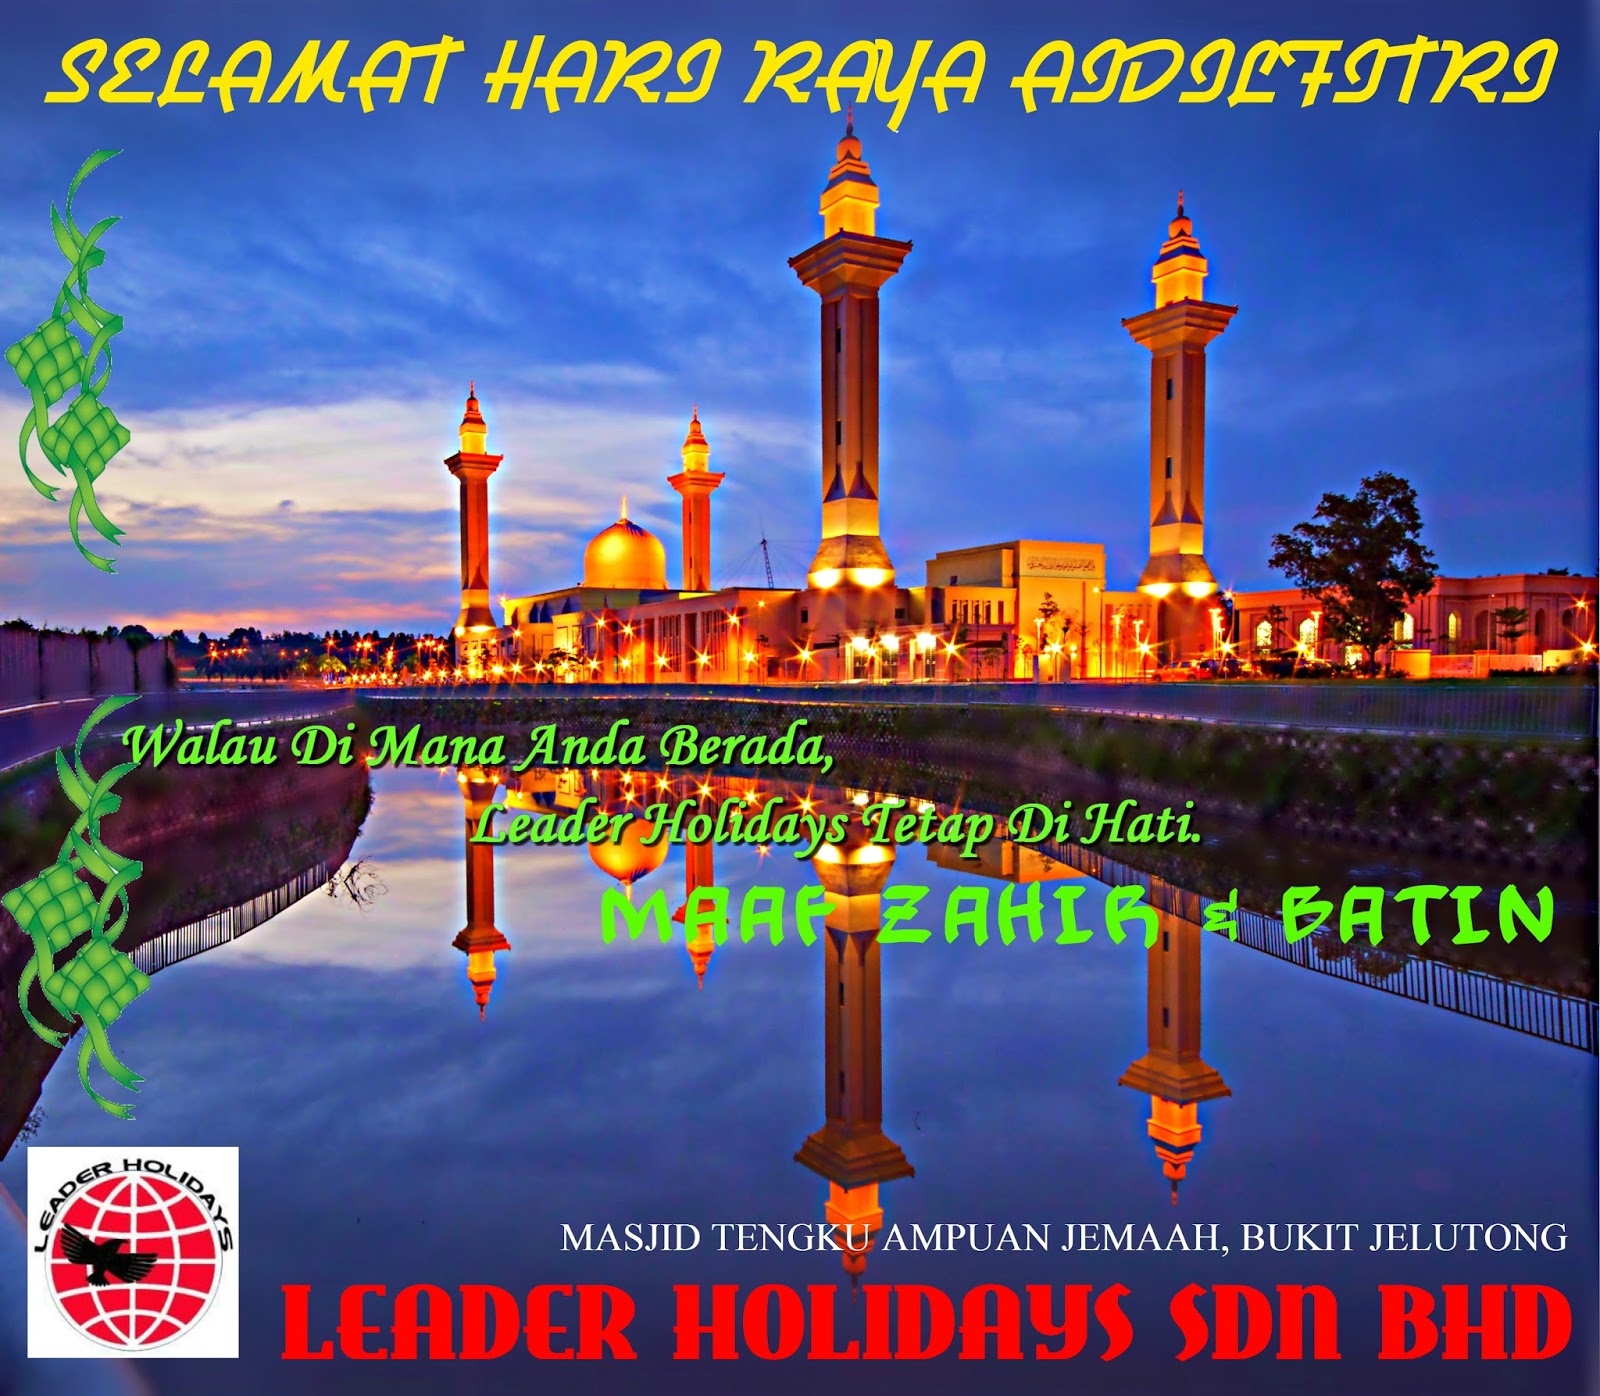 SELAMAT HARI RAYA AIDILFITRI | LEADER HOLIDAYS